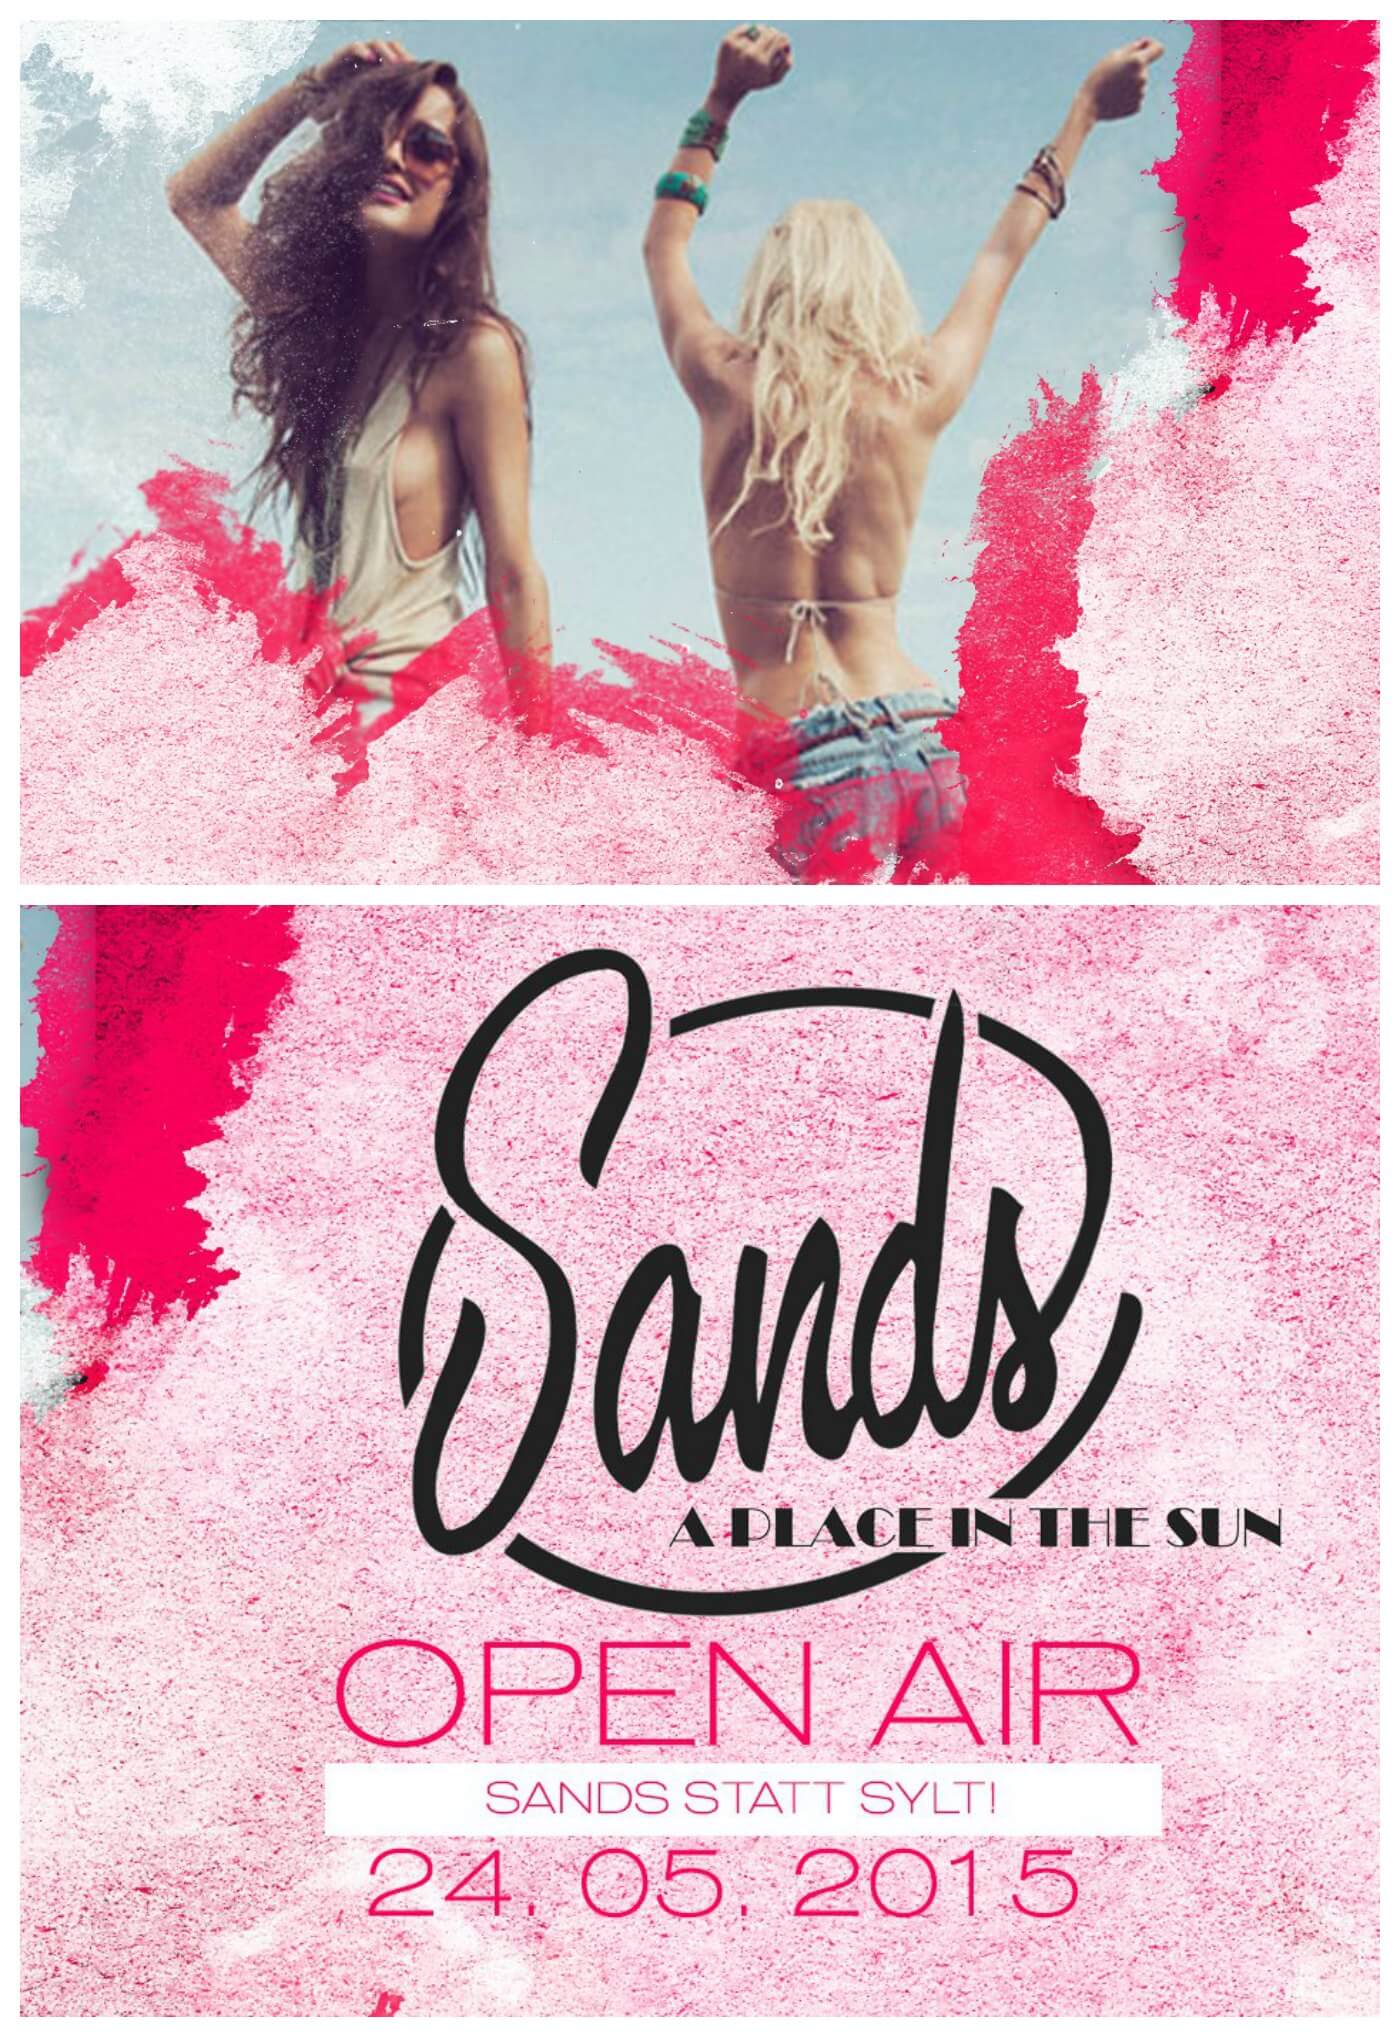 Sands statt Sylt! In der Sands Bar wird mit leckerem BBQ, Drinks und deepestem Sound die Open Air Saison begrüßt! Hier könnt ihr gemütlich einen Cocktail schlürfen oder gleich so richtig abgehen! Den ganzen Tag über sorgen mehrere DJs für musikalische Highlights!